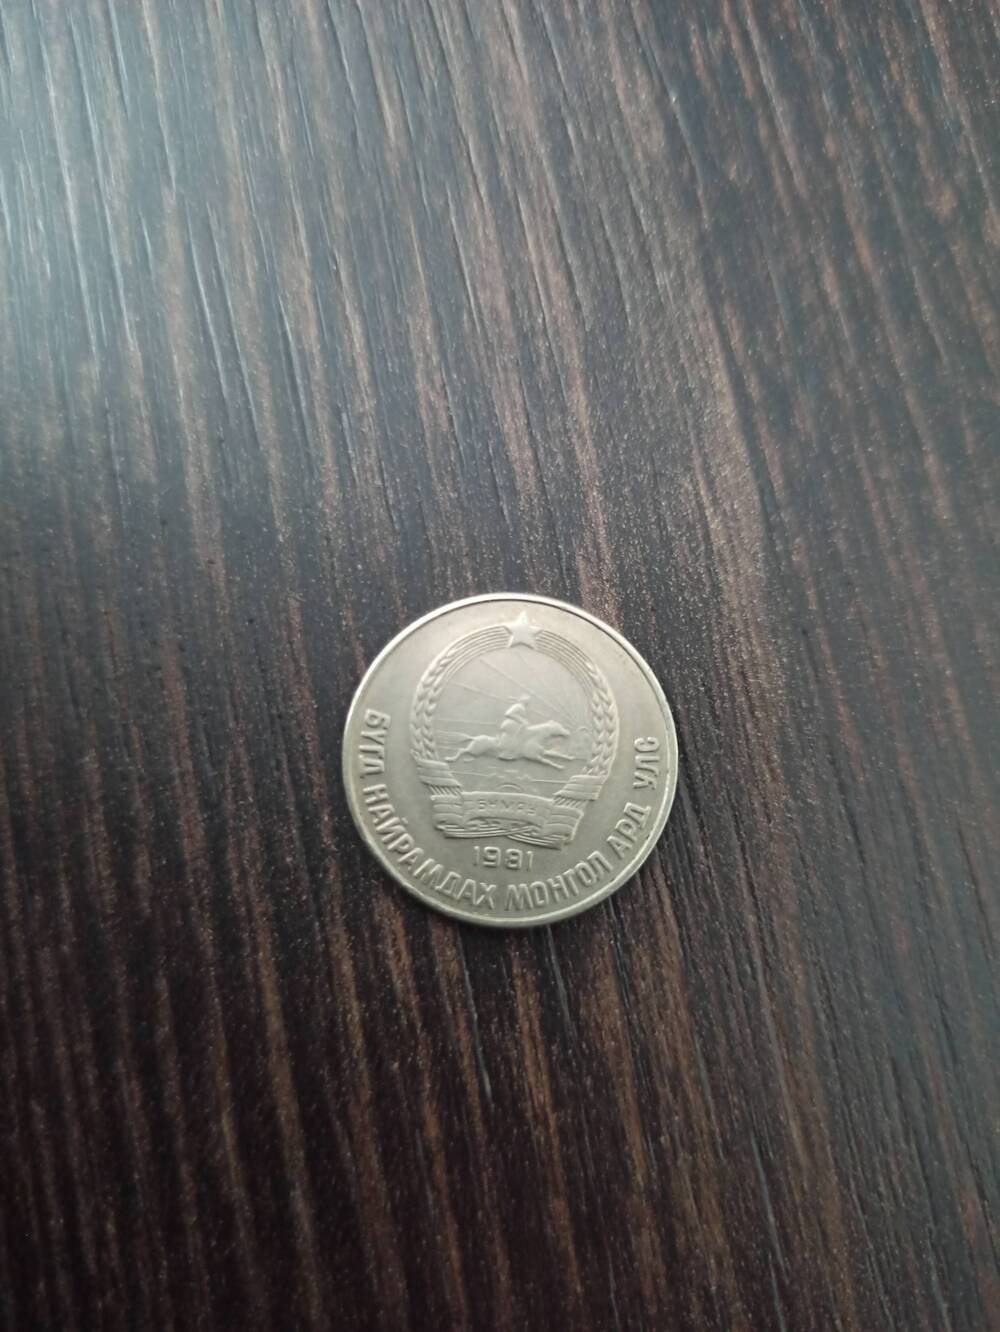 Нумизматика. Монета Монголии достоинством 15 монго 1981 года. Лицевая сторона надпись 15 монго и снизу венок. Гербовая сторона – герб БНМАУ.